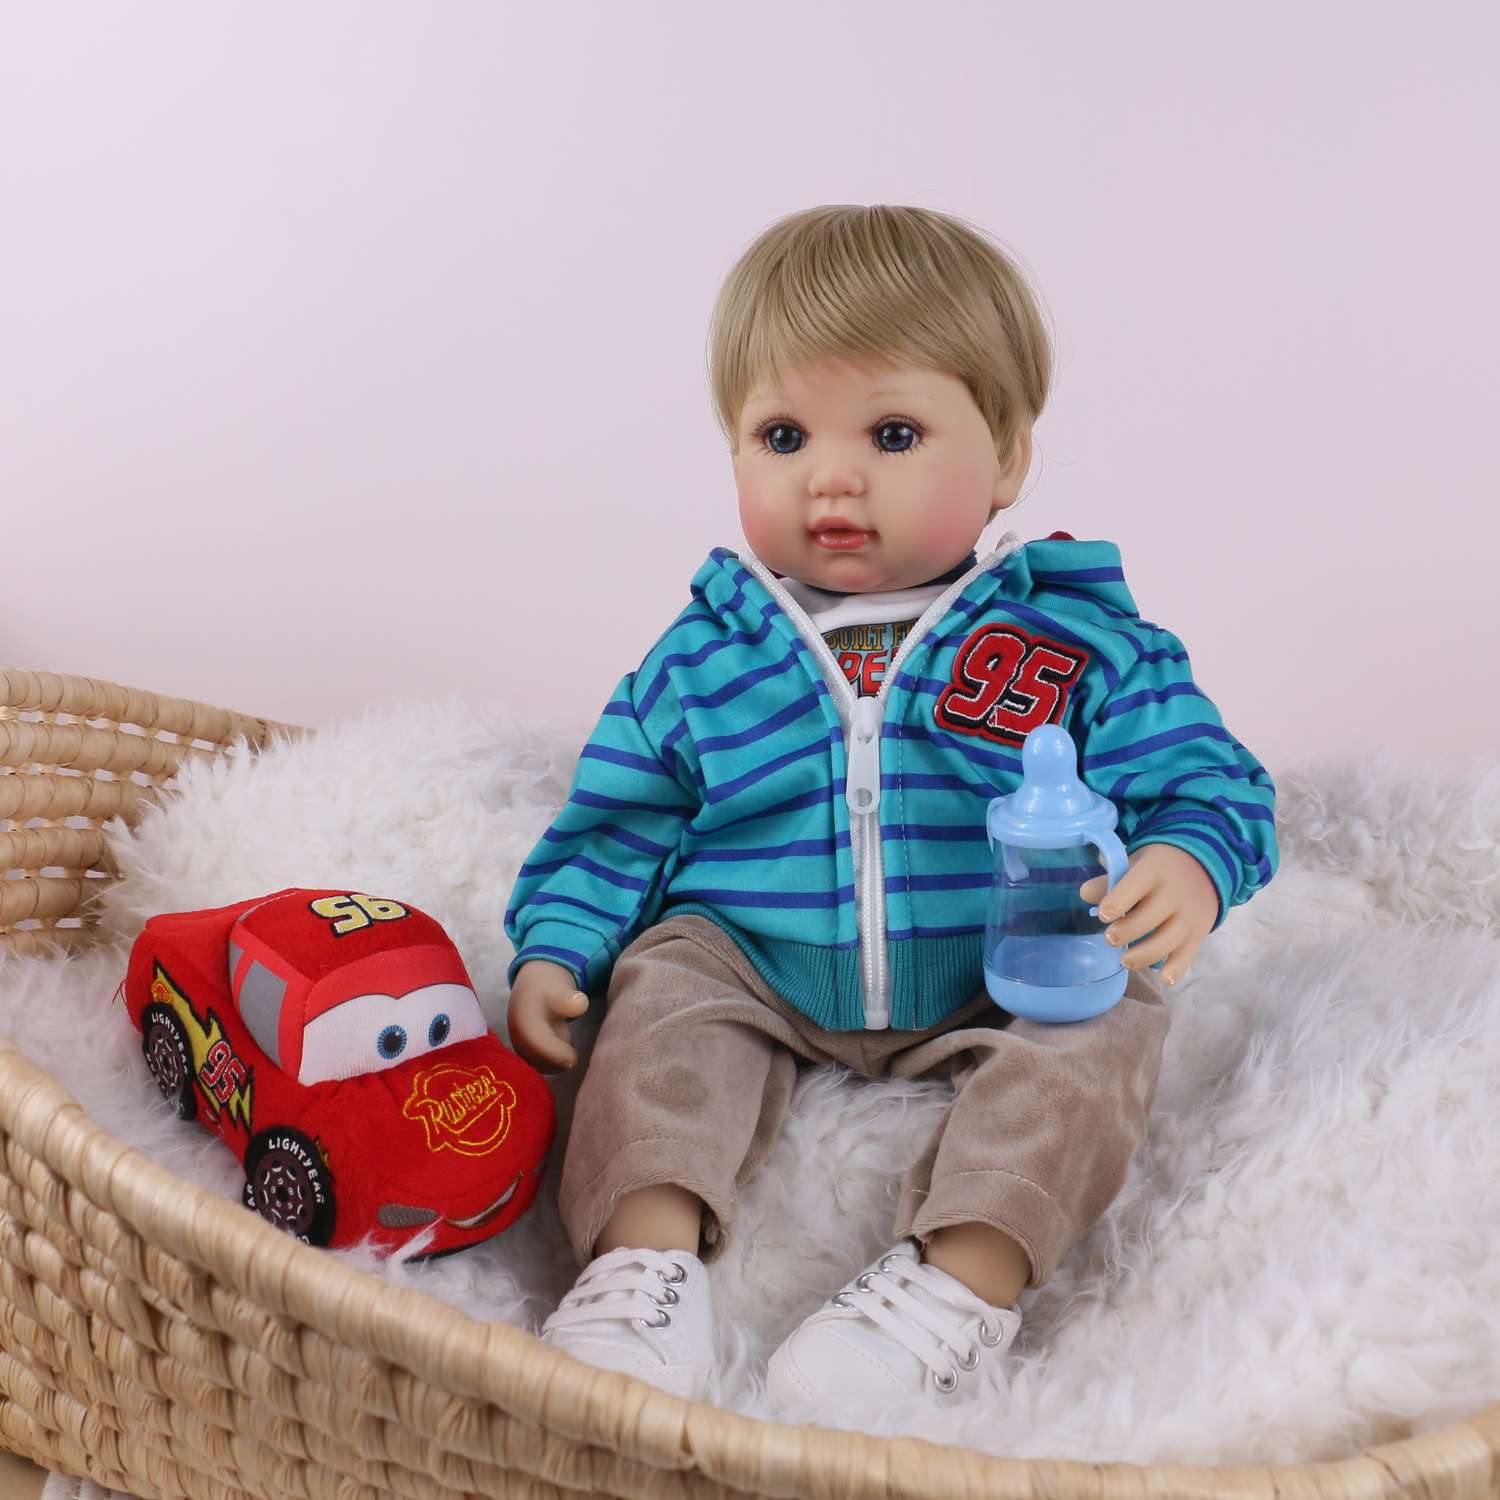 Кукла Реборн QA BABY Мишель мальчик большой пупс набор игрушки для девочки 42 см 45009 - фото 2